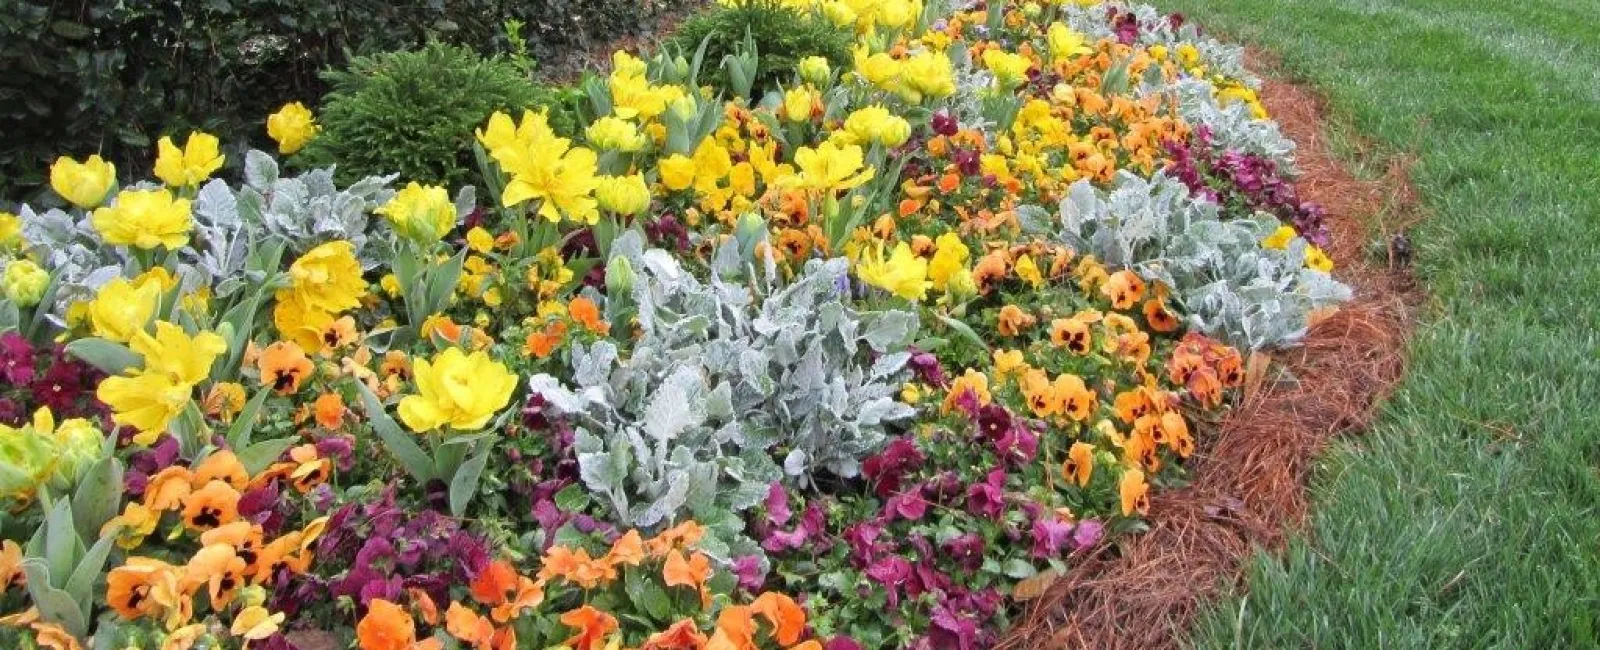 a close up of a flower garden